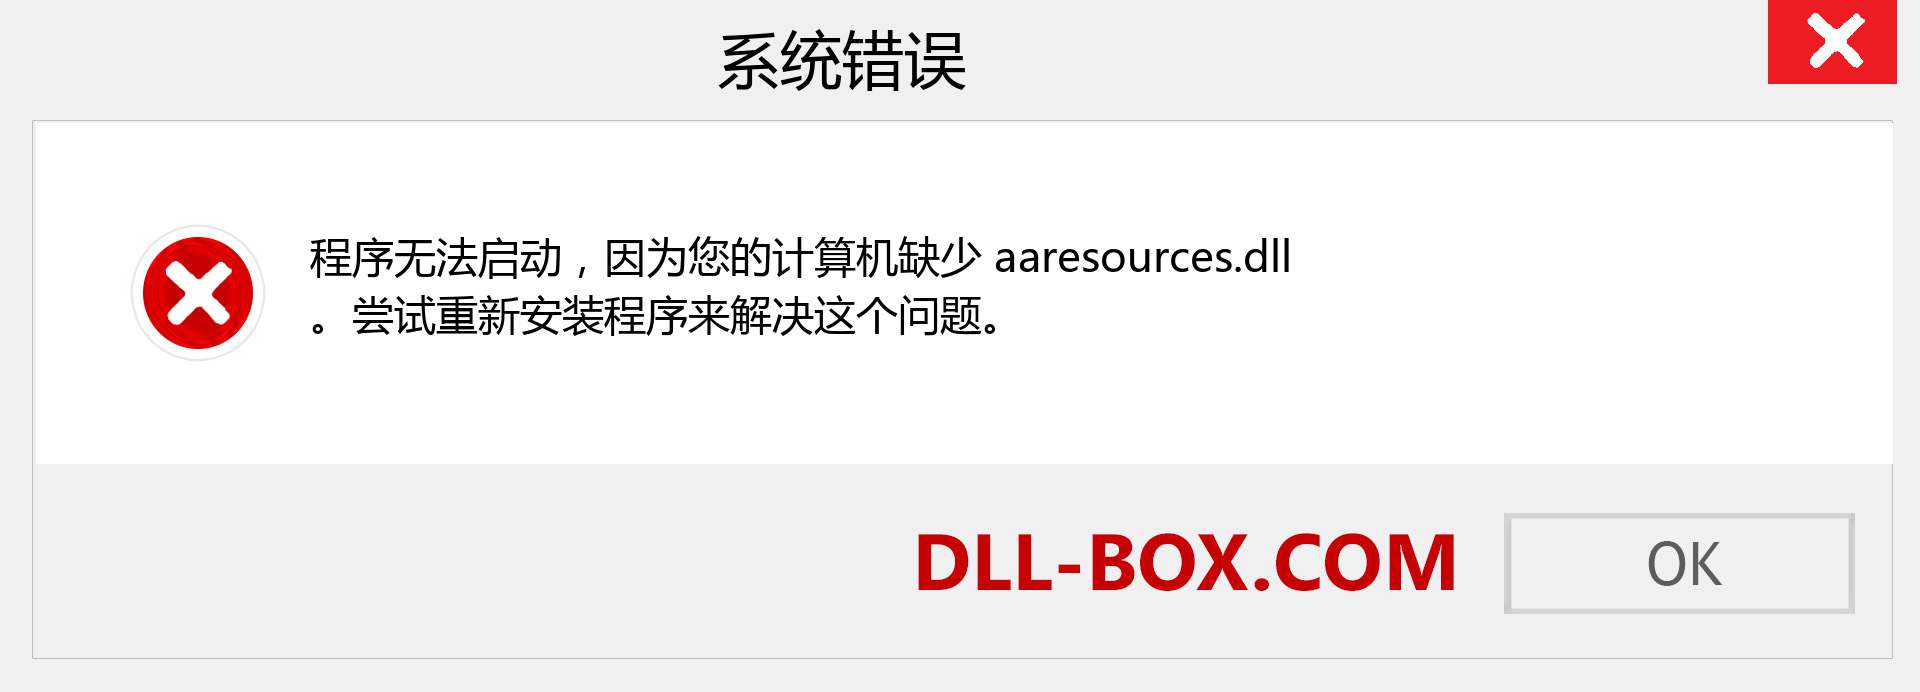 aaresources.dll 文件丢失？。 适用于 Windows 7、8、10 的下载 - 修复 Windows、照片、图像上的 aaresources dll 丢失错误